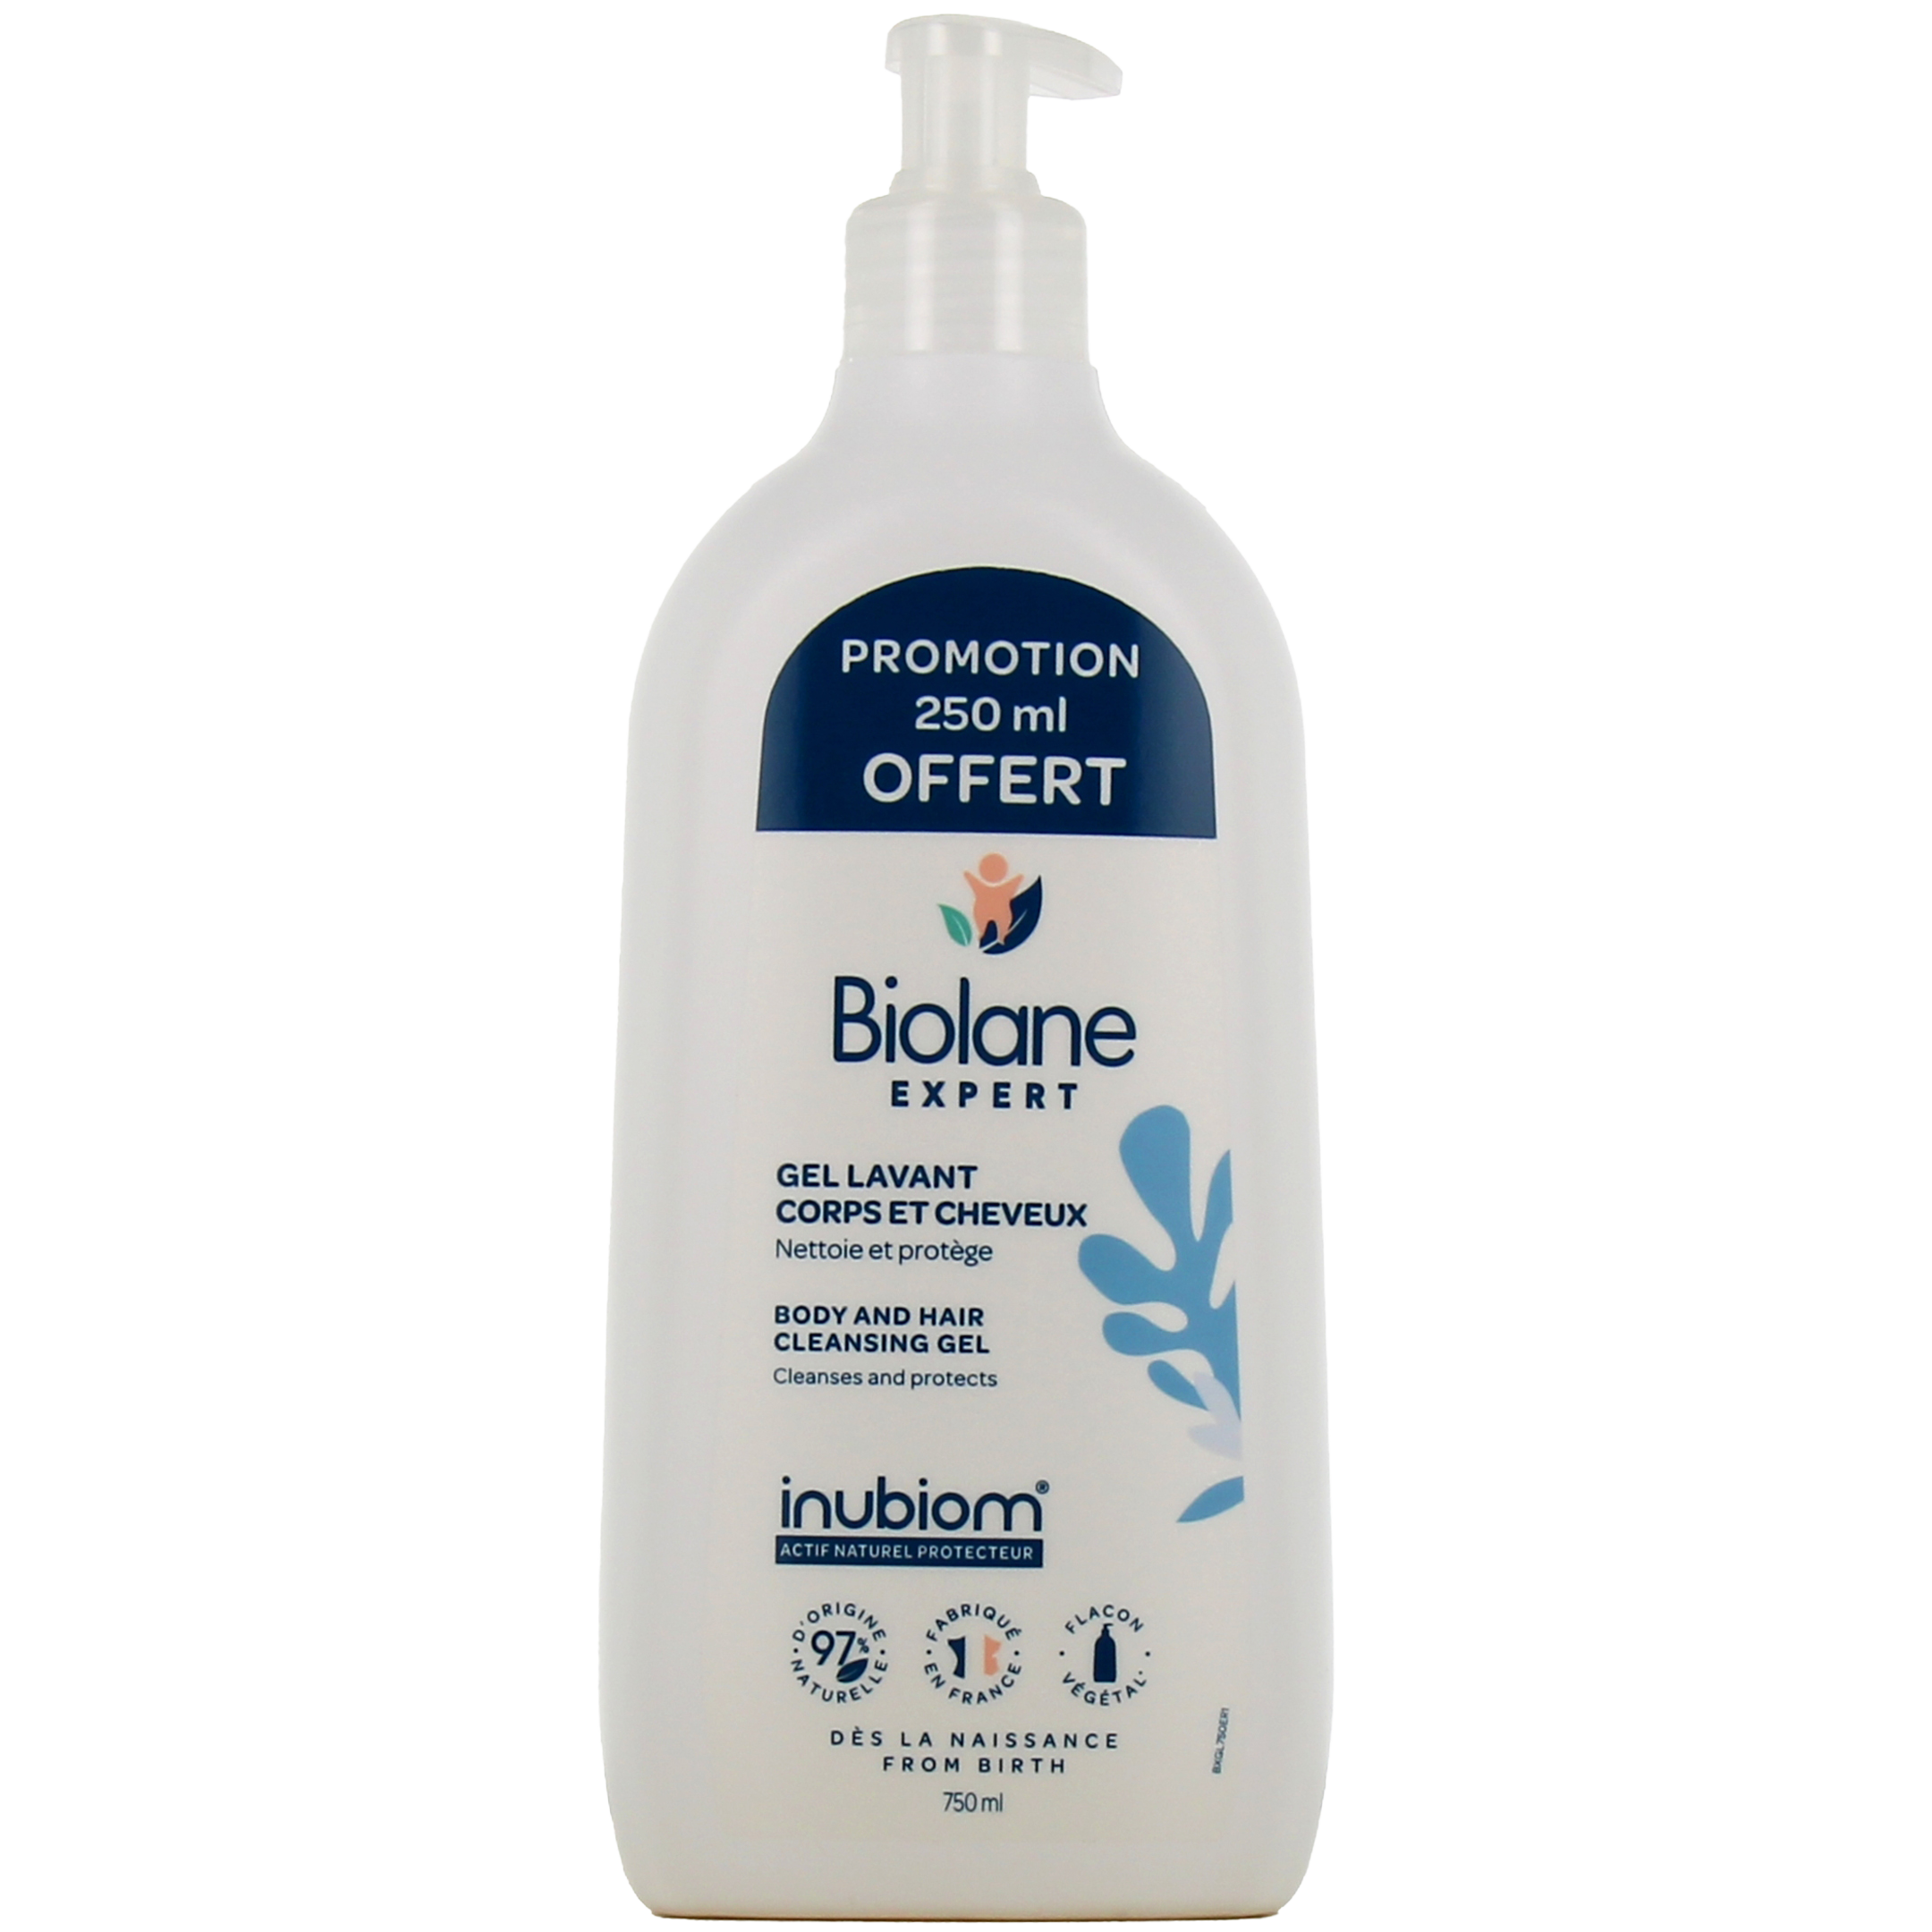 Biolane Expert gel lavant corps & cheveux Éco-Recharge 500ml